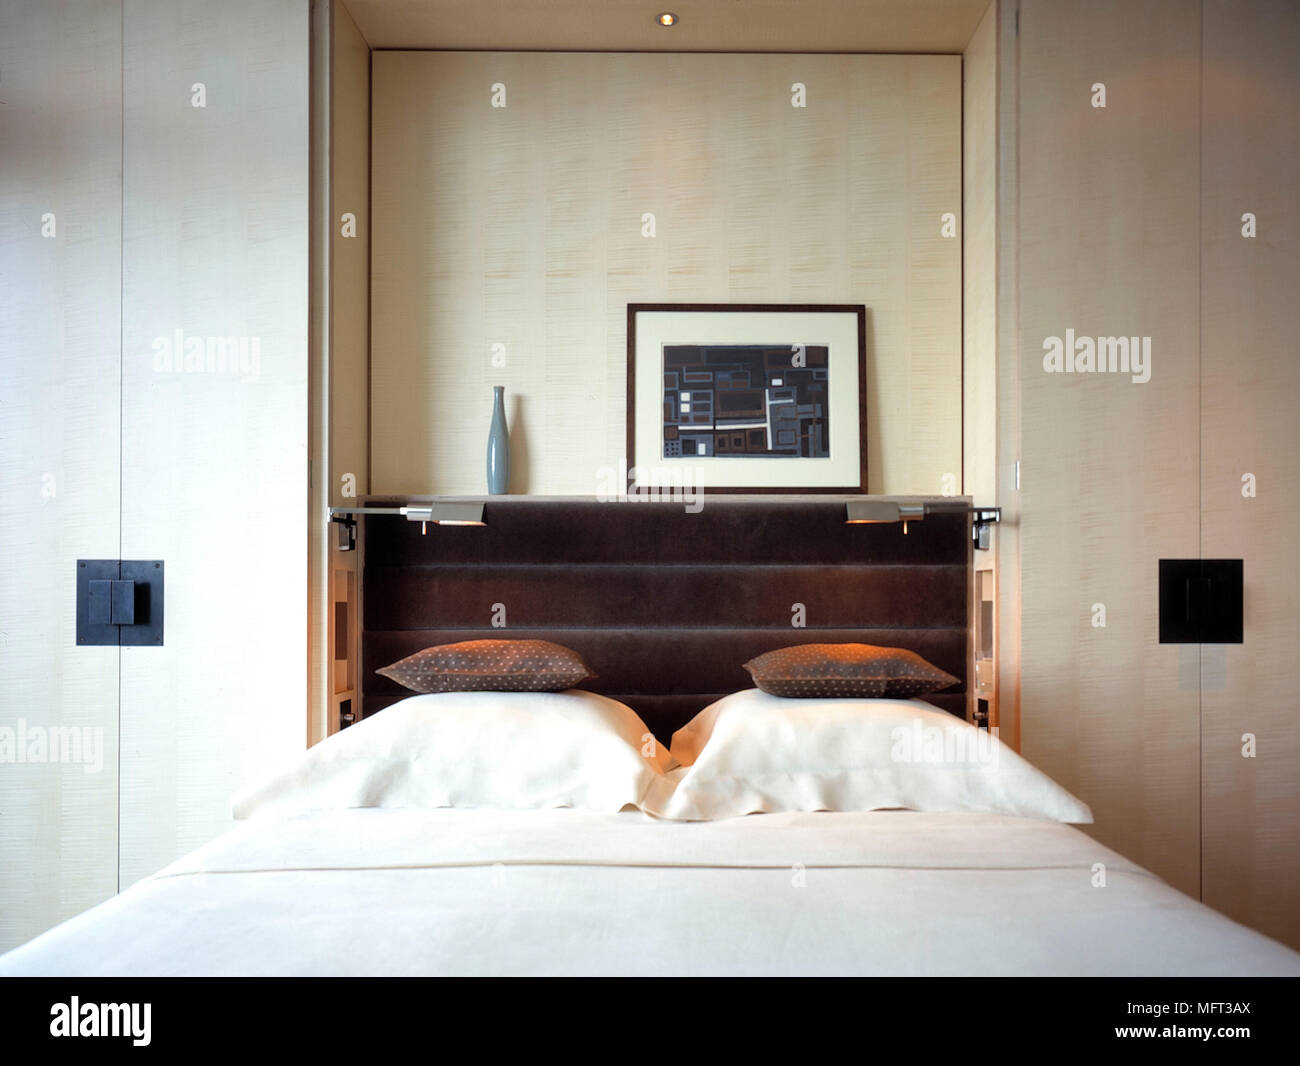 Moderne neutral Schlafzimmer Bett in Kleiderschränke braun Kopfteil weiße Bettwäsche Interieur Schlafzimmer Betten Schränke Einbauschrank Stockfoto